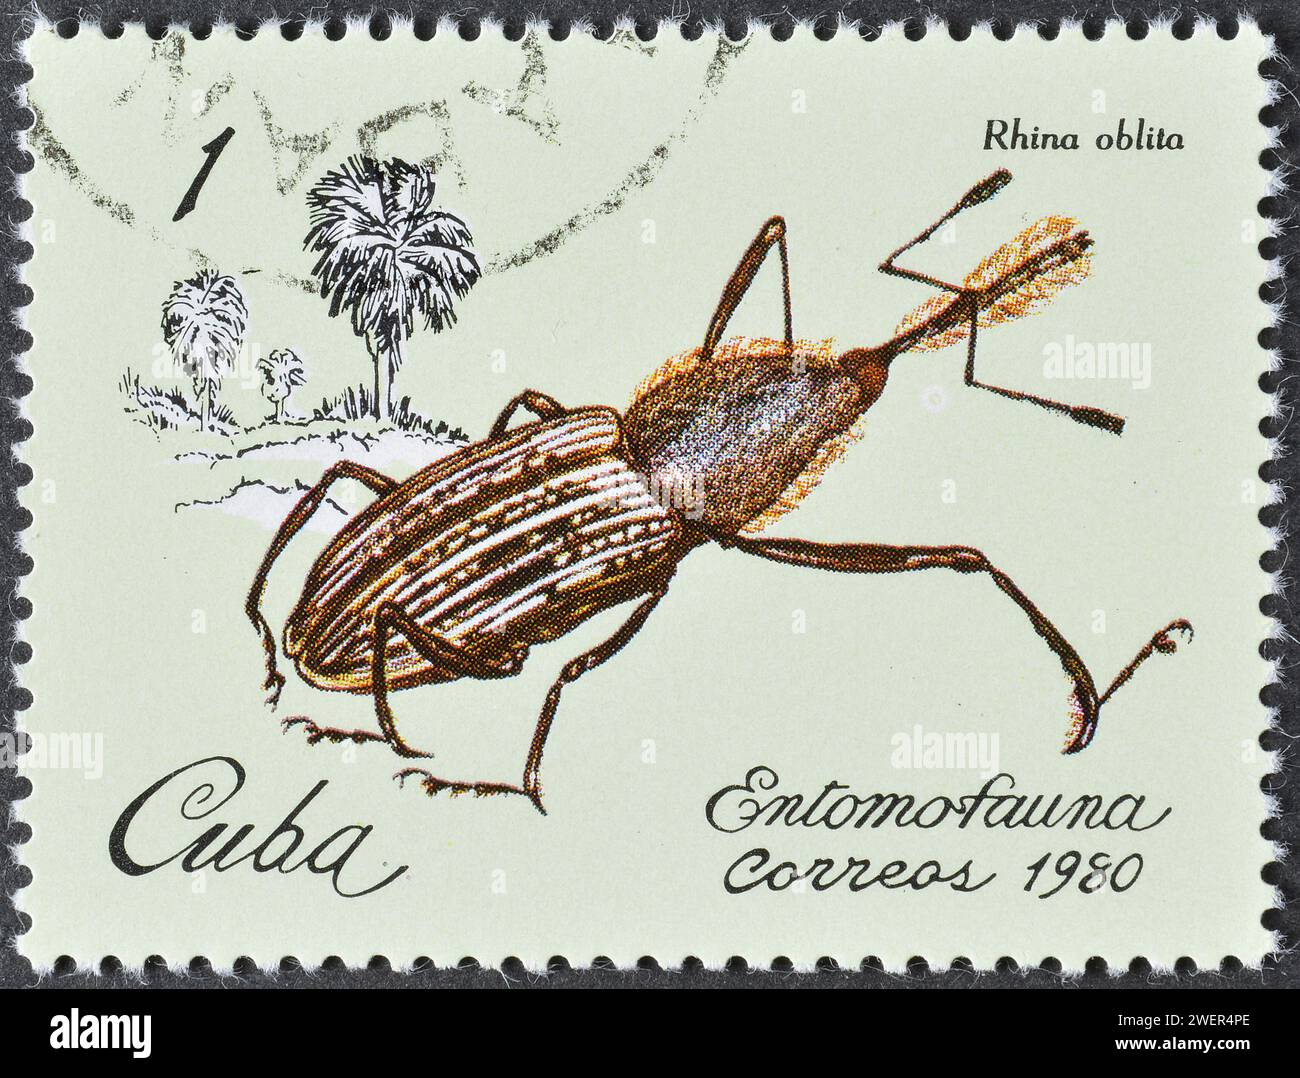 Francobollo cancellato stampato da Cuba, che mostra Weevil (Rhina oblita), intorno al 1980. Foto Stock